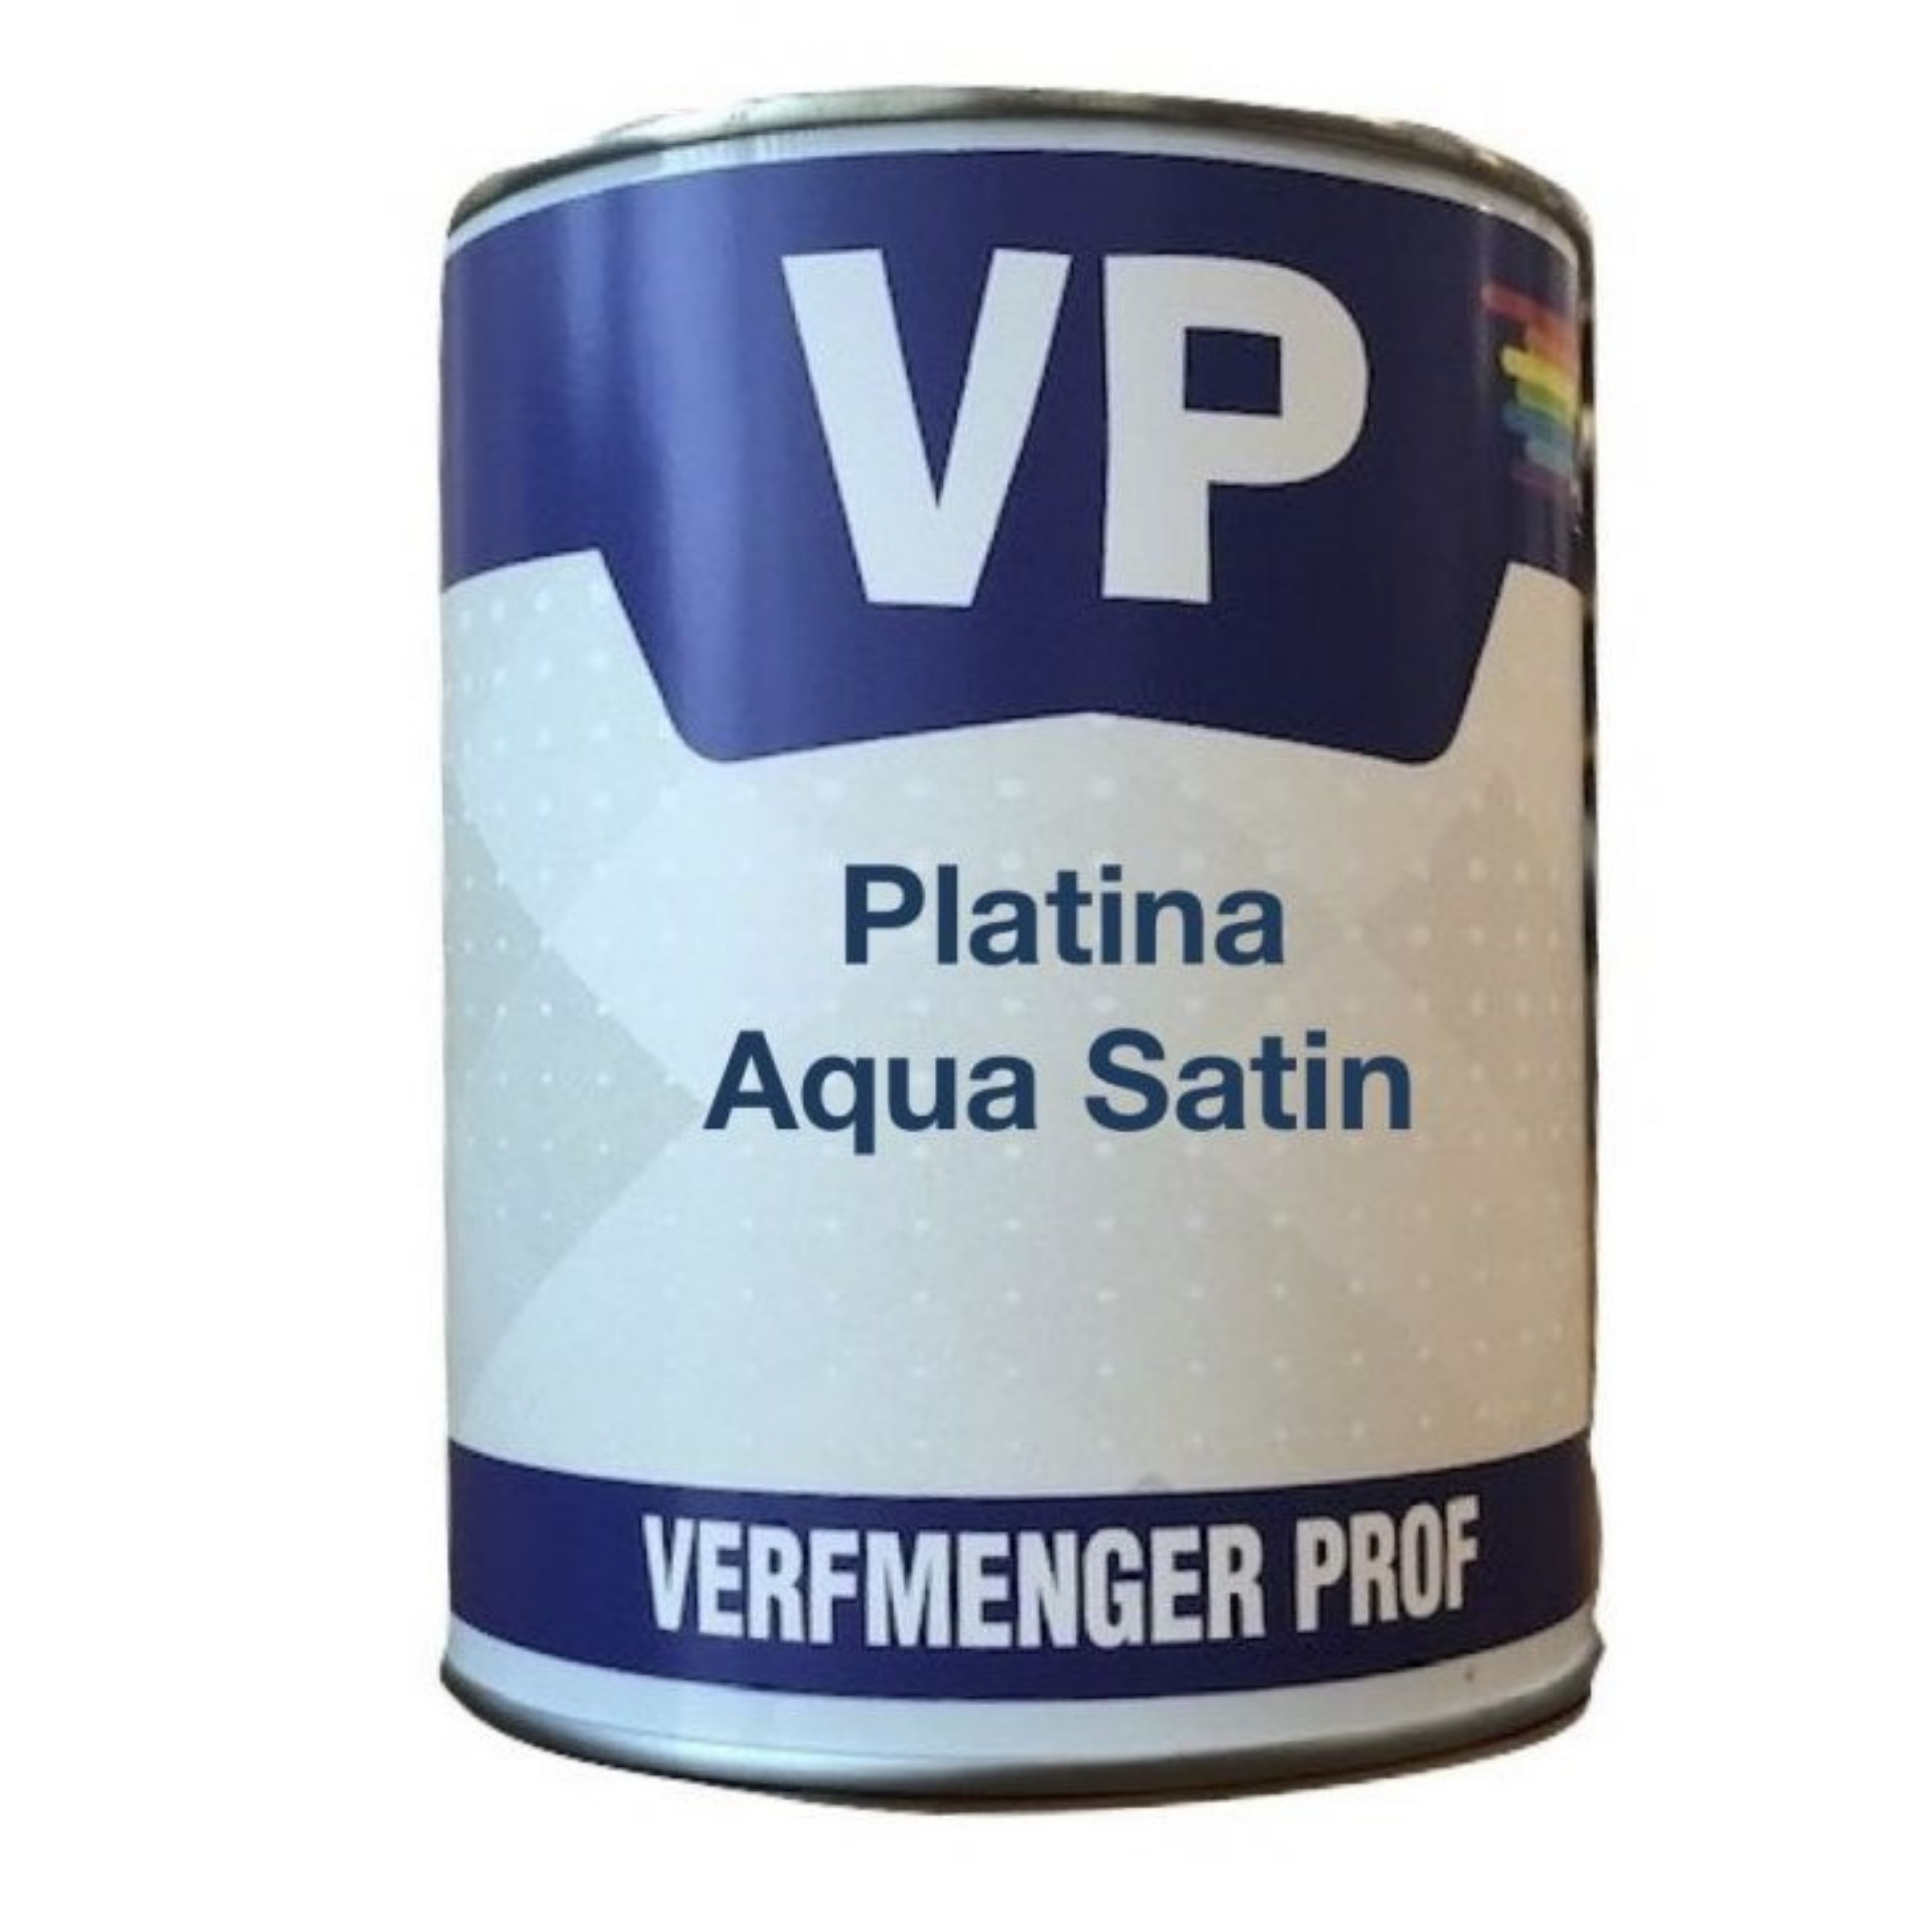 VP Platina Aqua Satin